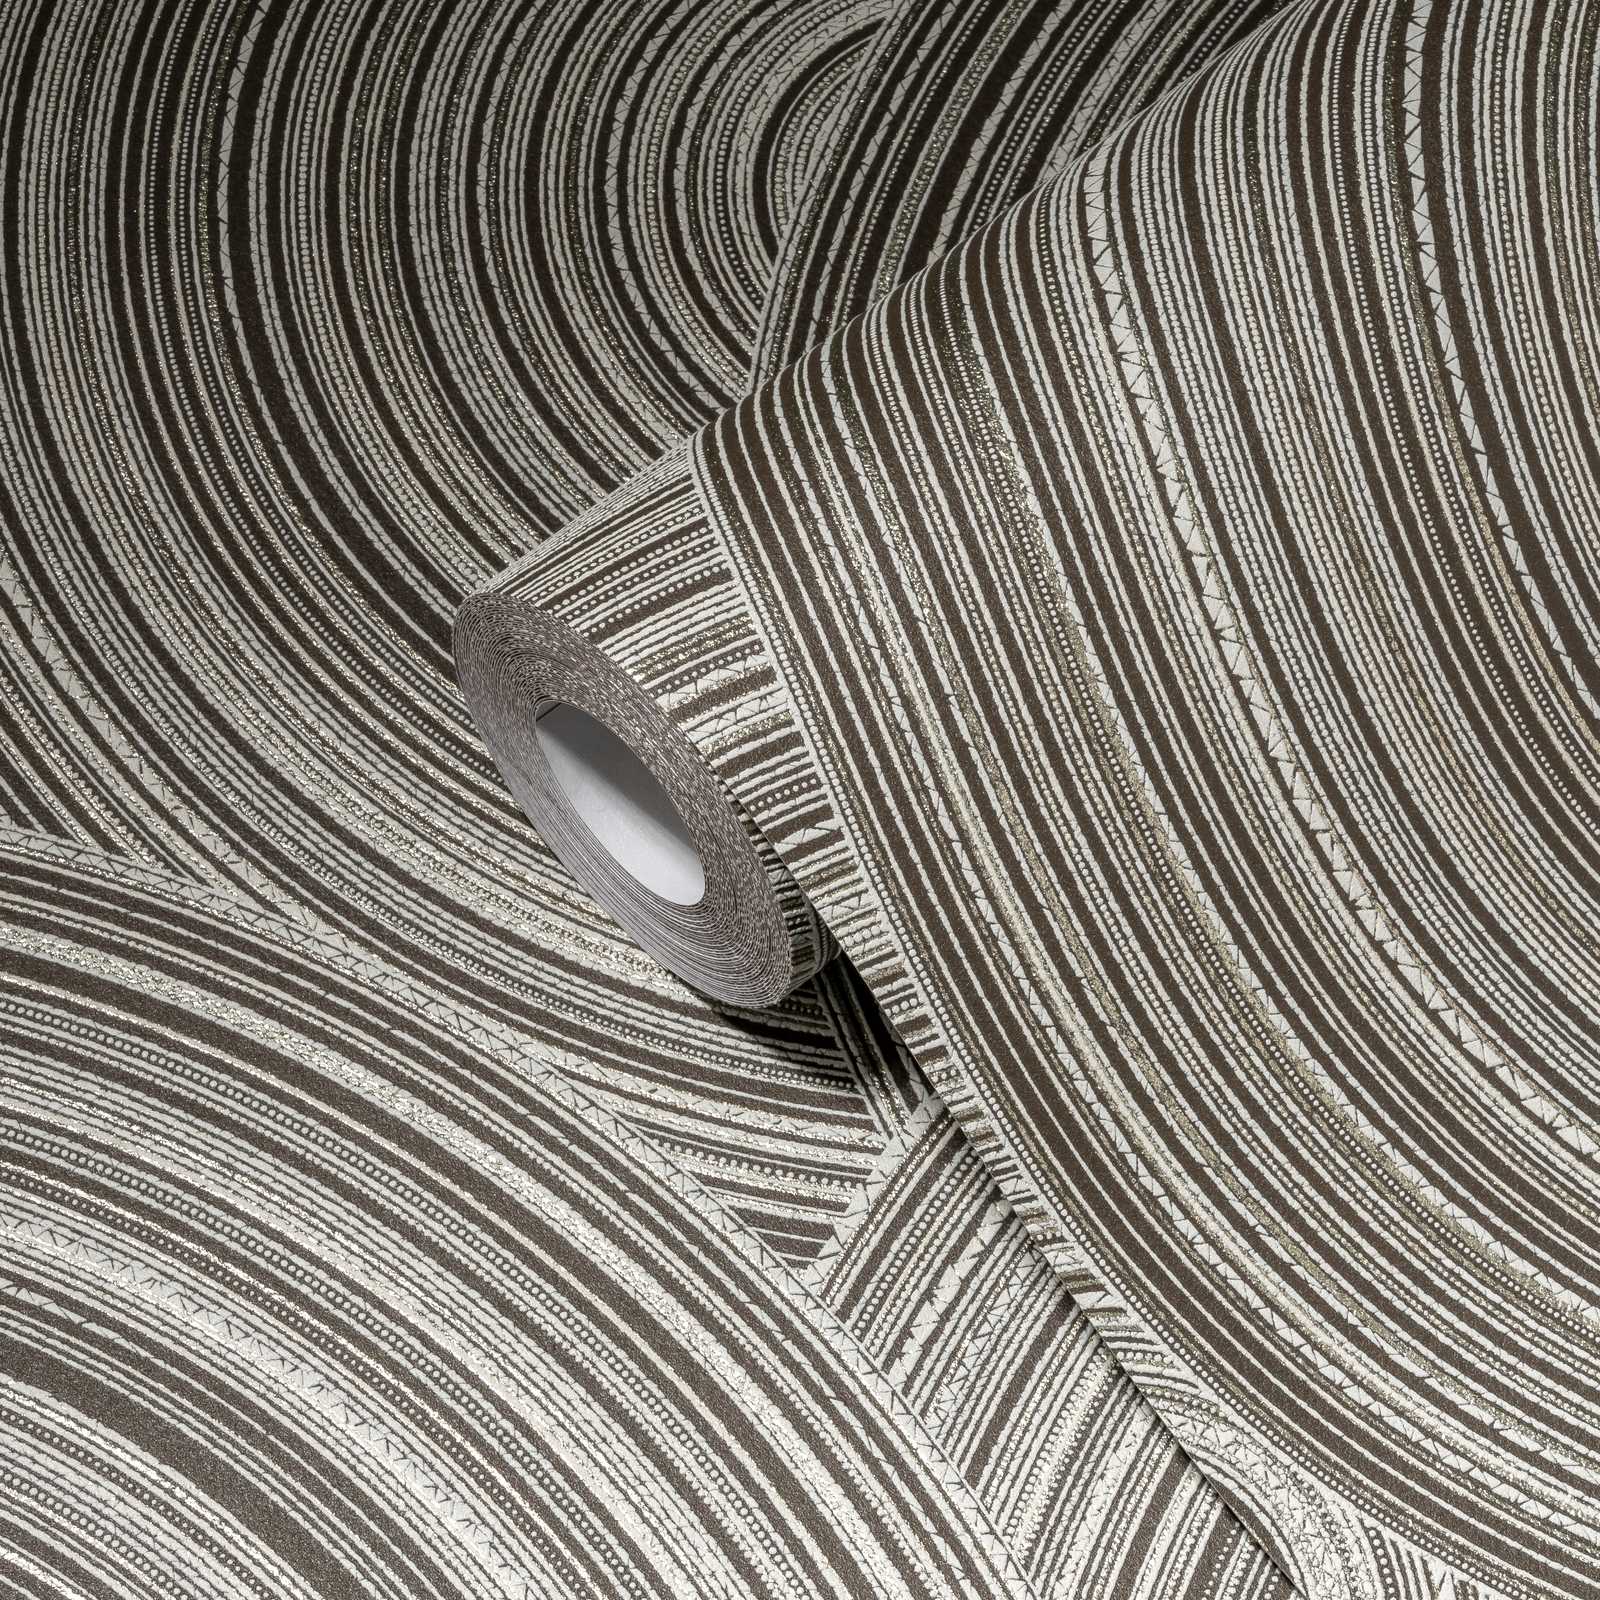             Kreis Tapete mit Ethno Design mit Struktureffekt – Braun, Creme
        